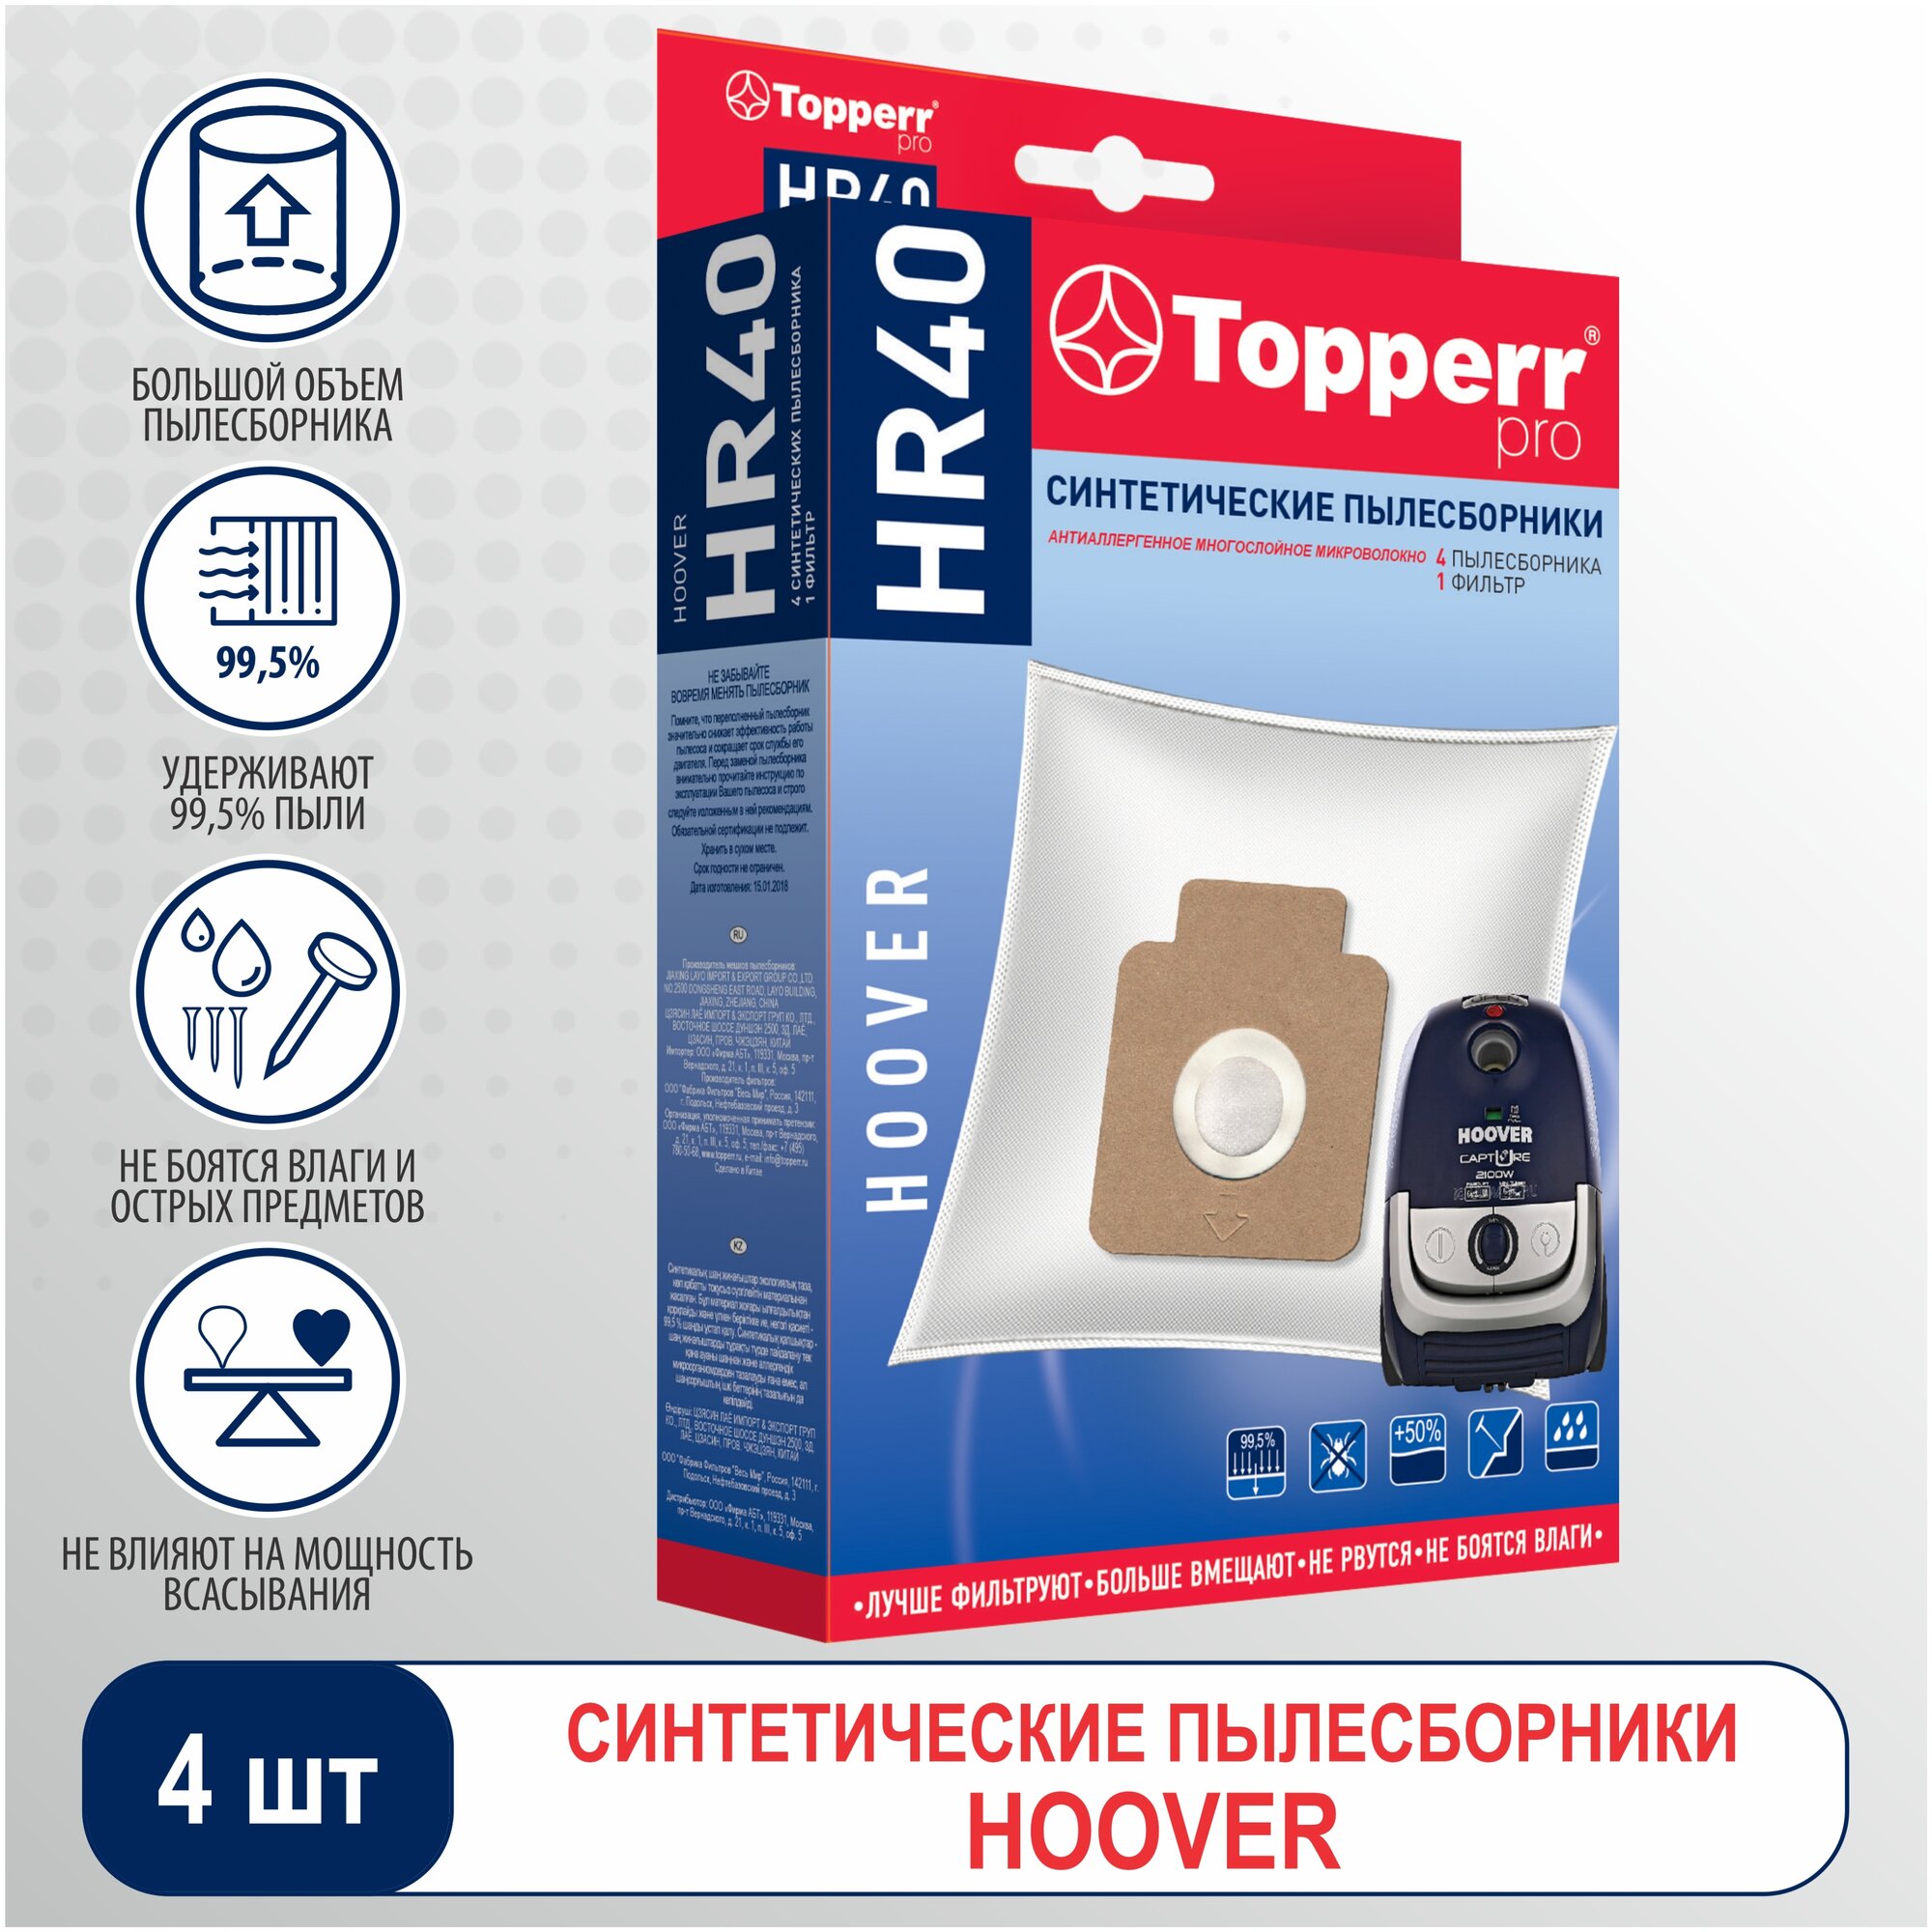 Пылесборник Topperr HR40 для H63/H64/H58 1429